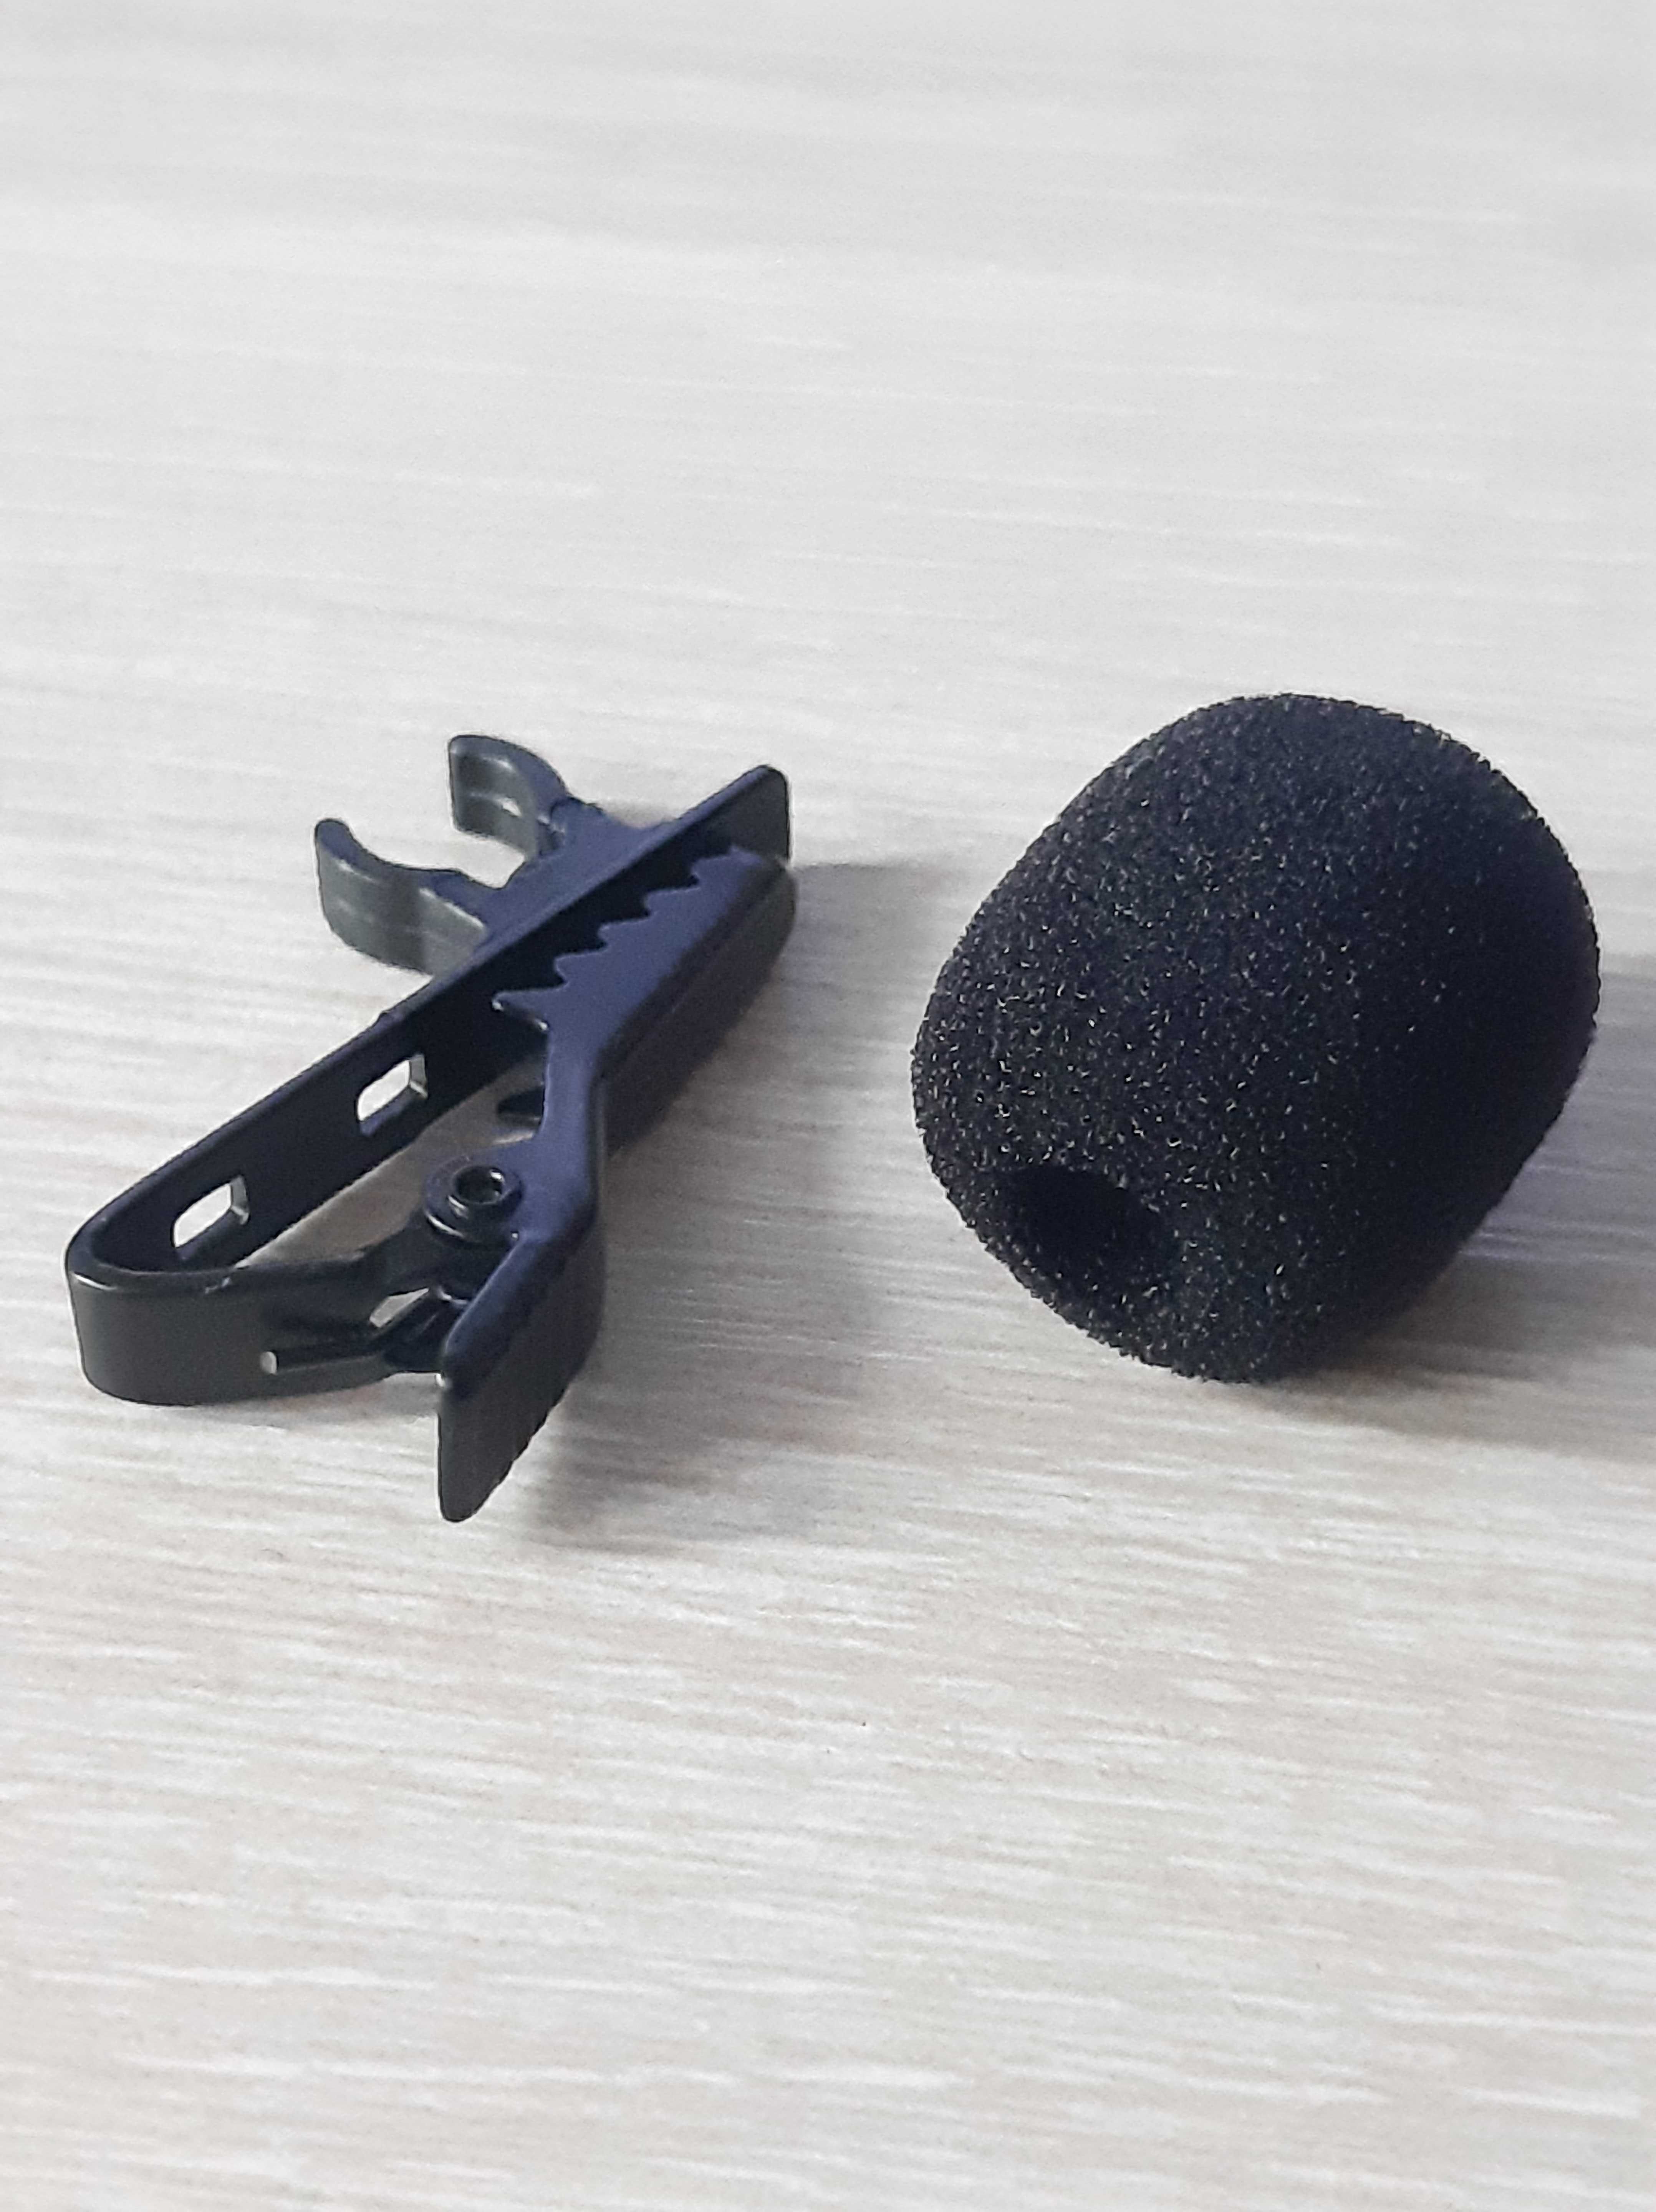 Прищепка для микрофона и ветрозащита для петличного микрофона